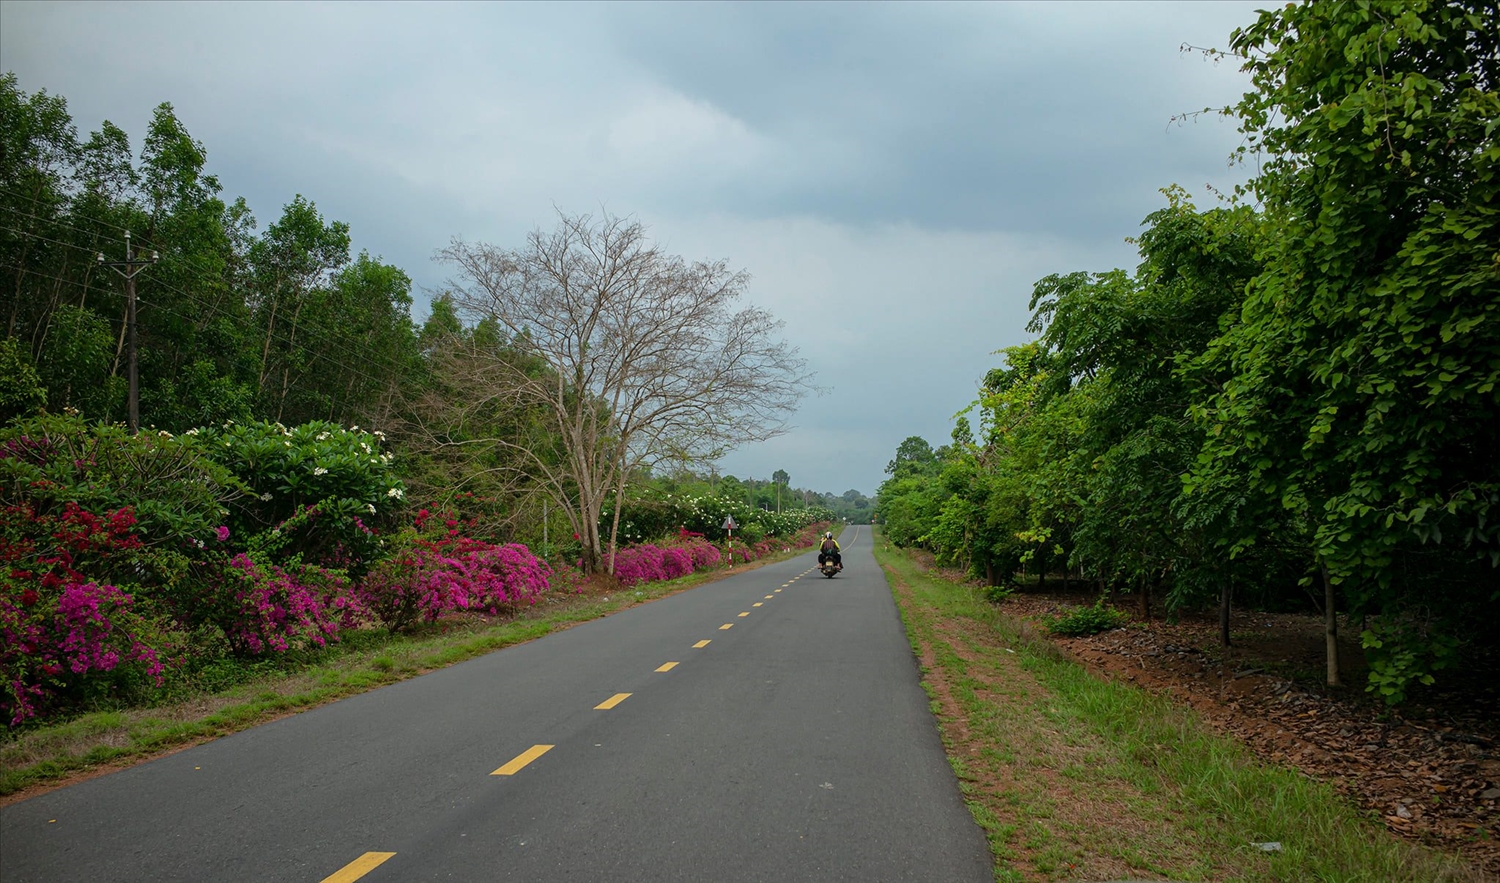 Đường vào rừng Mã Đà - Khu bảo tồn thiên nhiên văn hóa tỉnh Đồng Nai đầu mùa mưa. Hoa giấy 2 bên đường trải dài ngút ngàn đỏ ối xen lẫn màu hoa sứ trắng điểm xuyết.